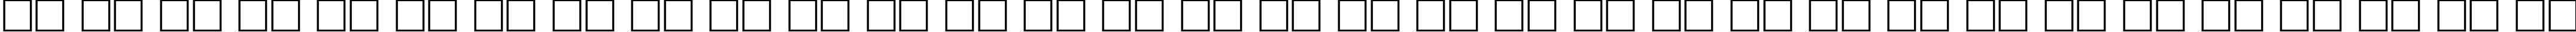 Пример написания русского алфавита шрифтом NTOutline